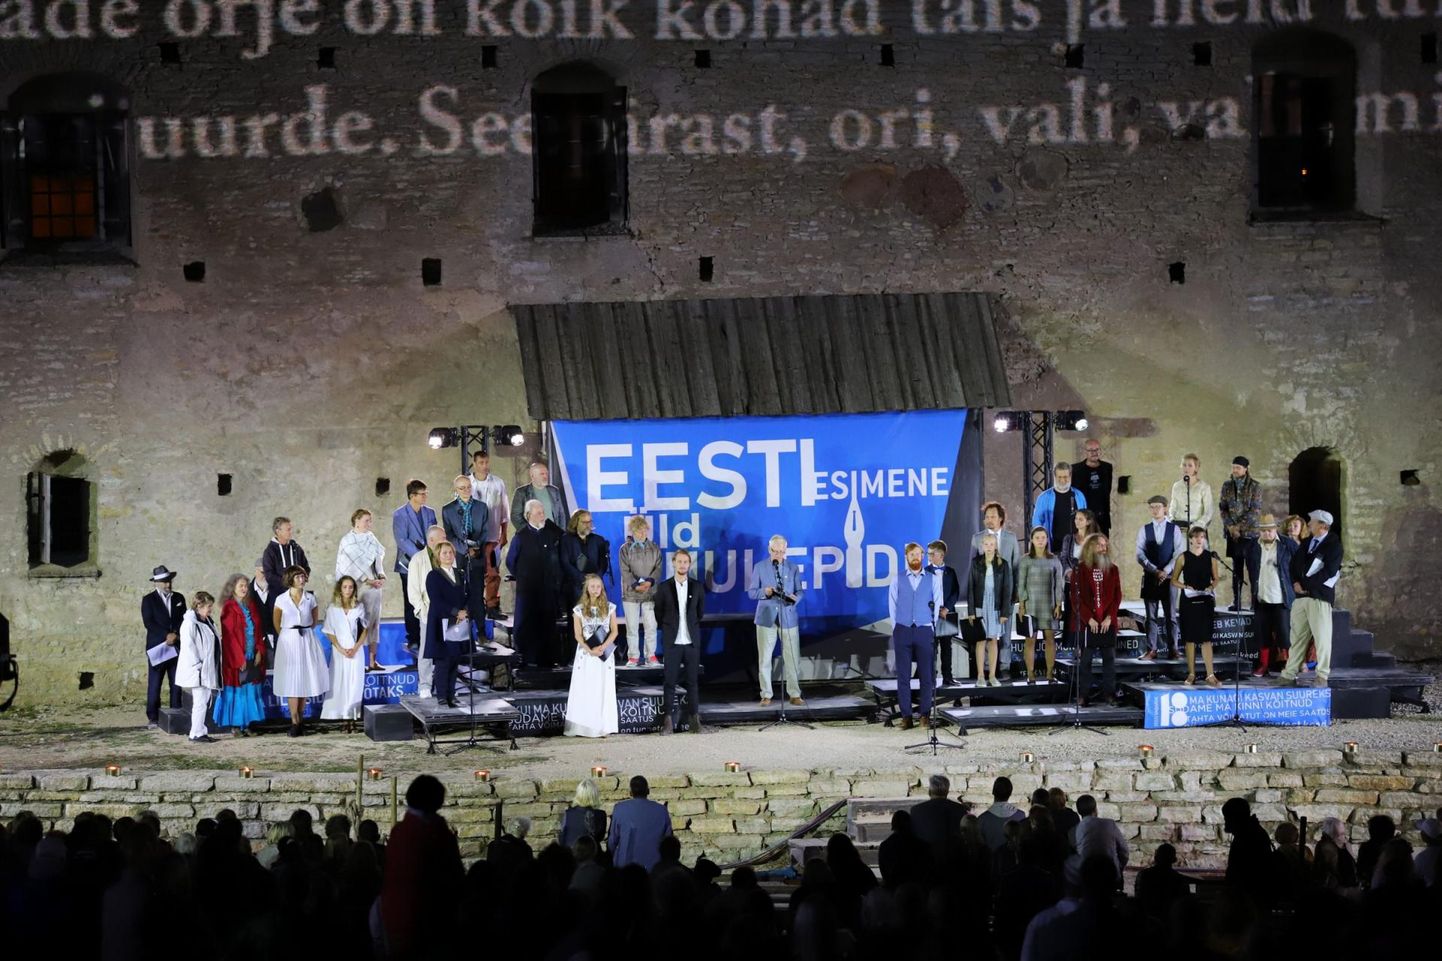 Rakveres toimus Eesti esimene luulepidu.